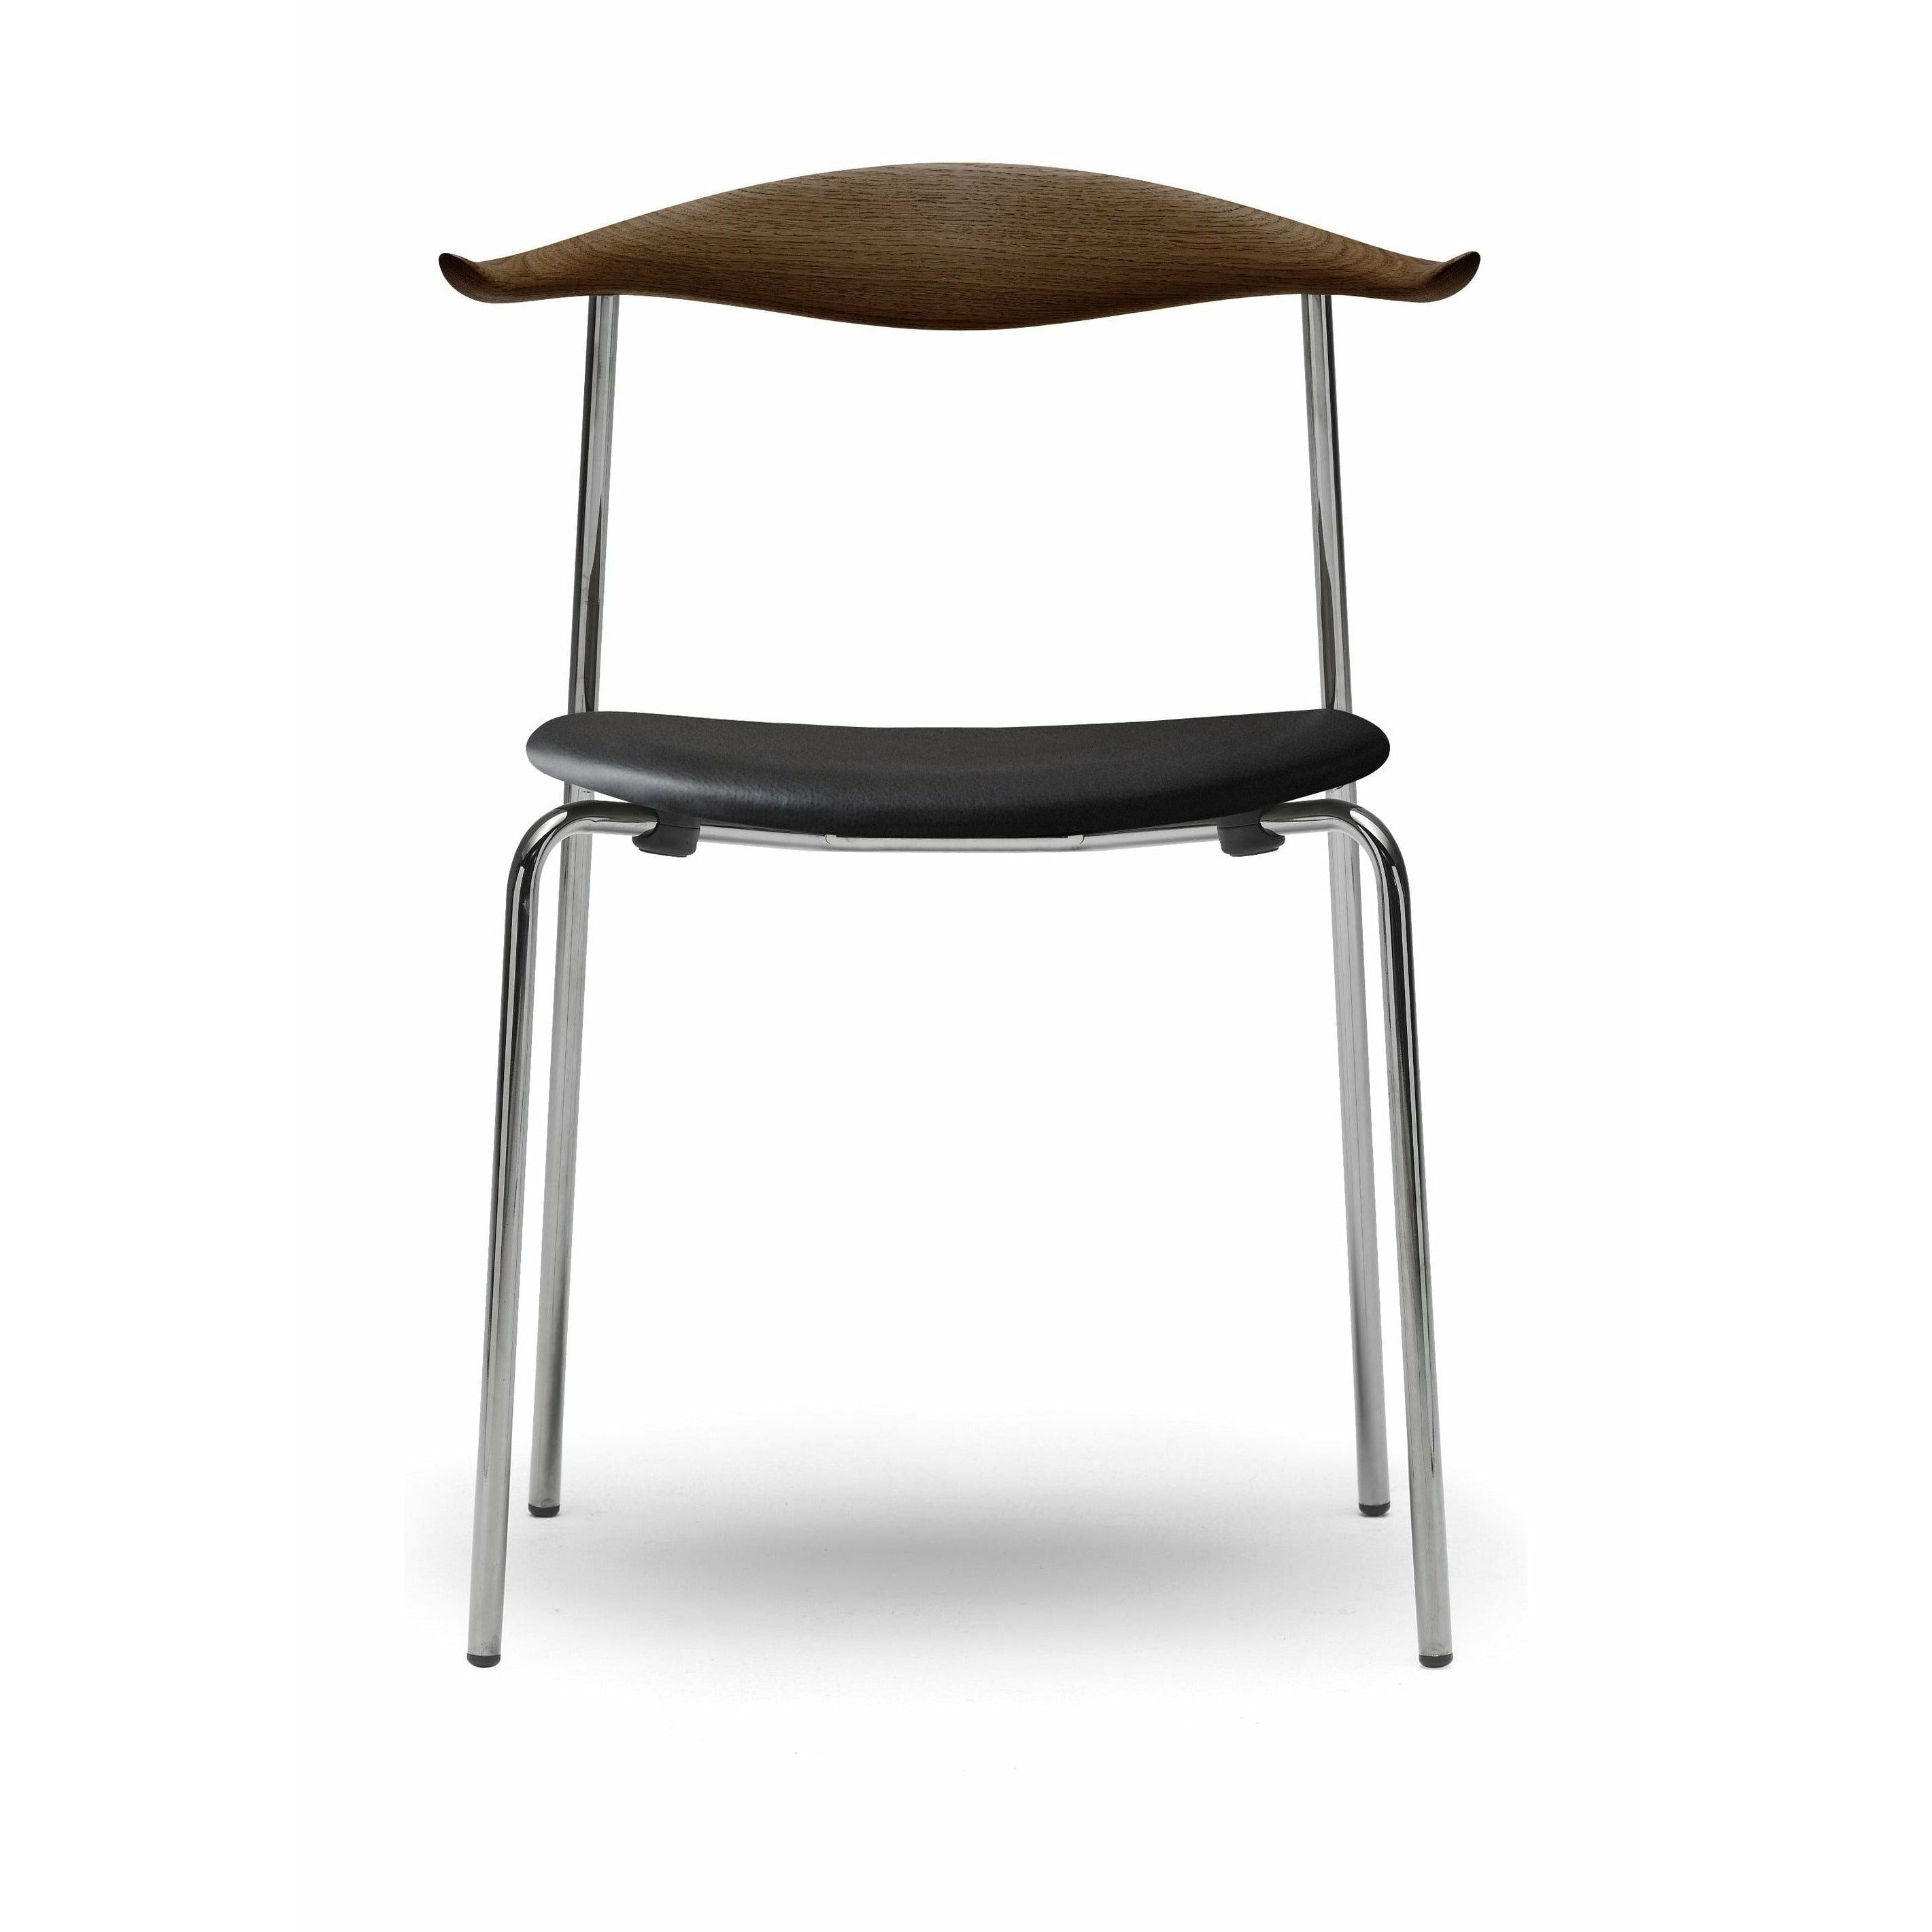 Carl Hansen CH88 P -stol, ekrökolja/Thor 301 läder